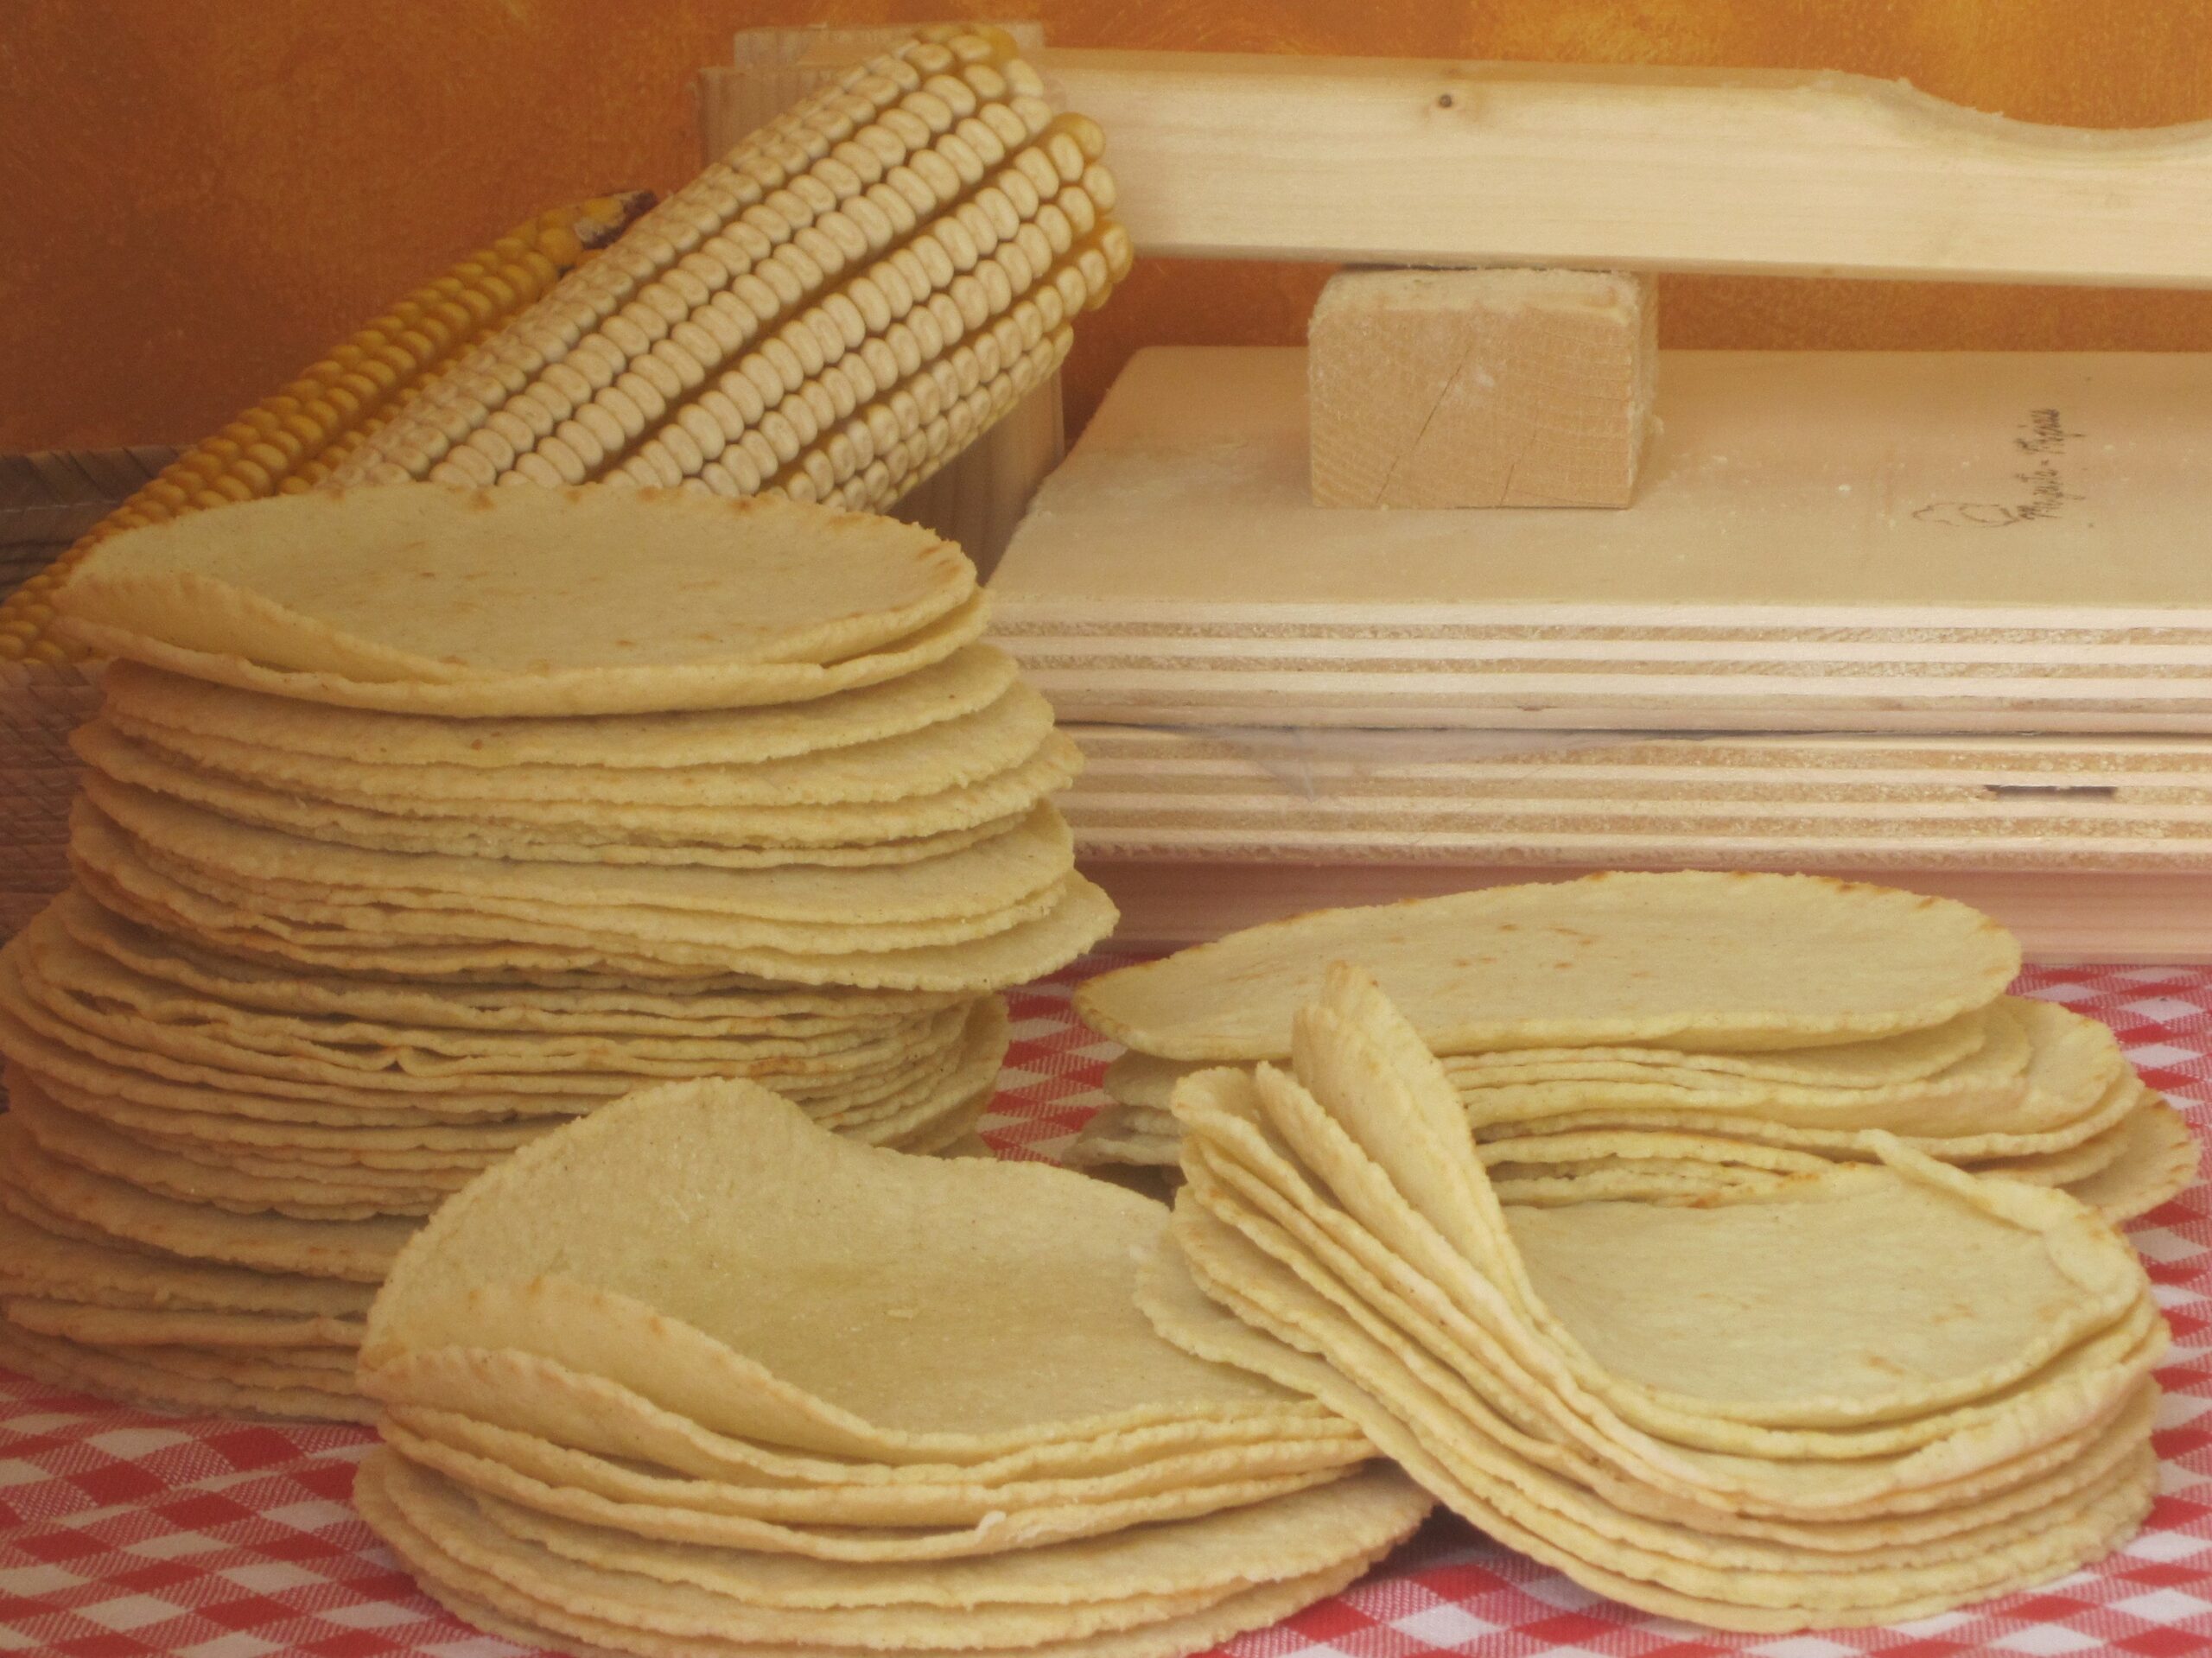 Tortillas di mais. Prepara le tortillas messicane seguendo questa